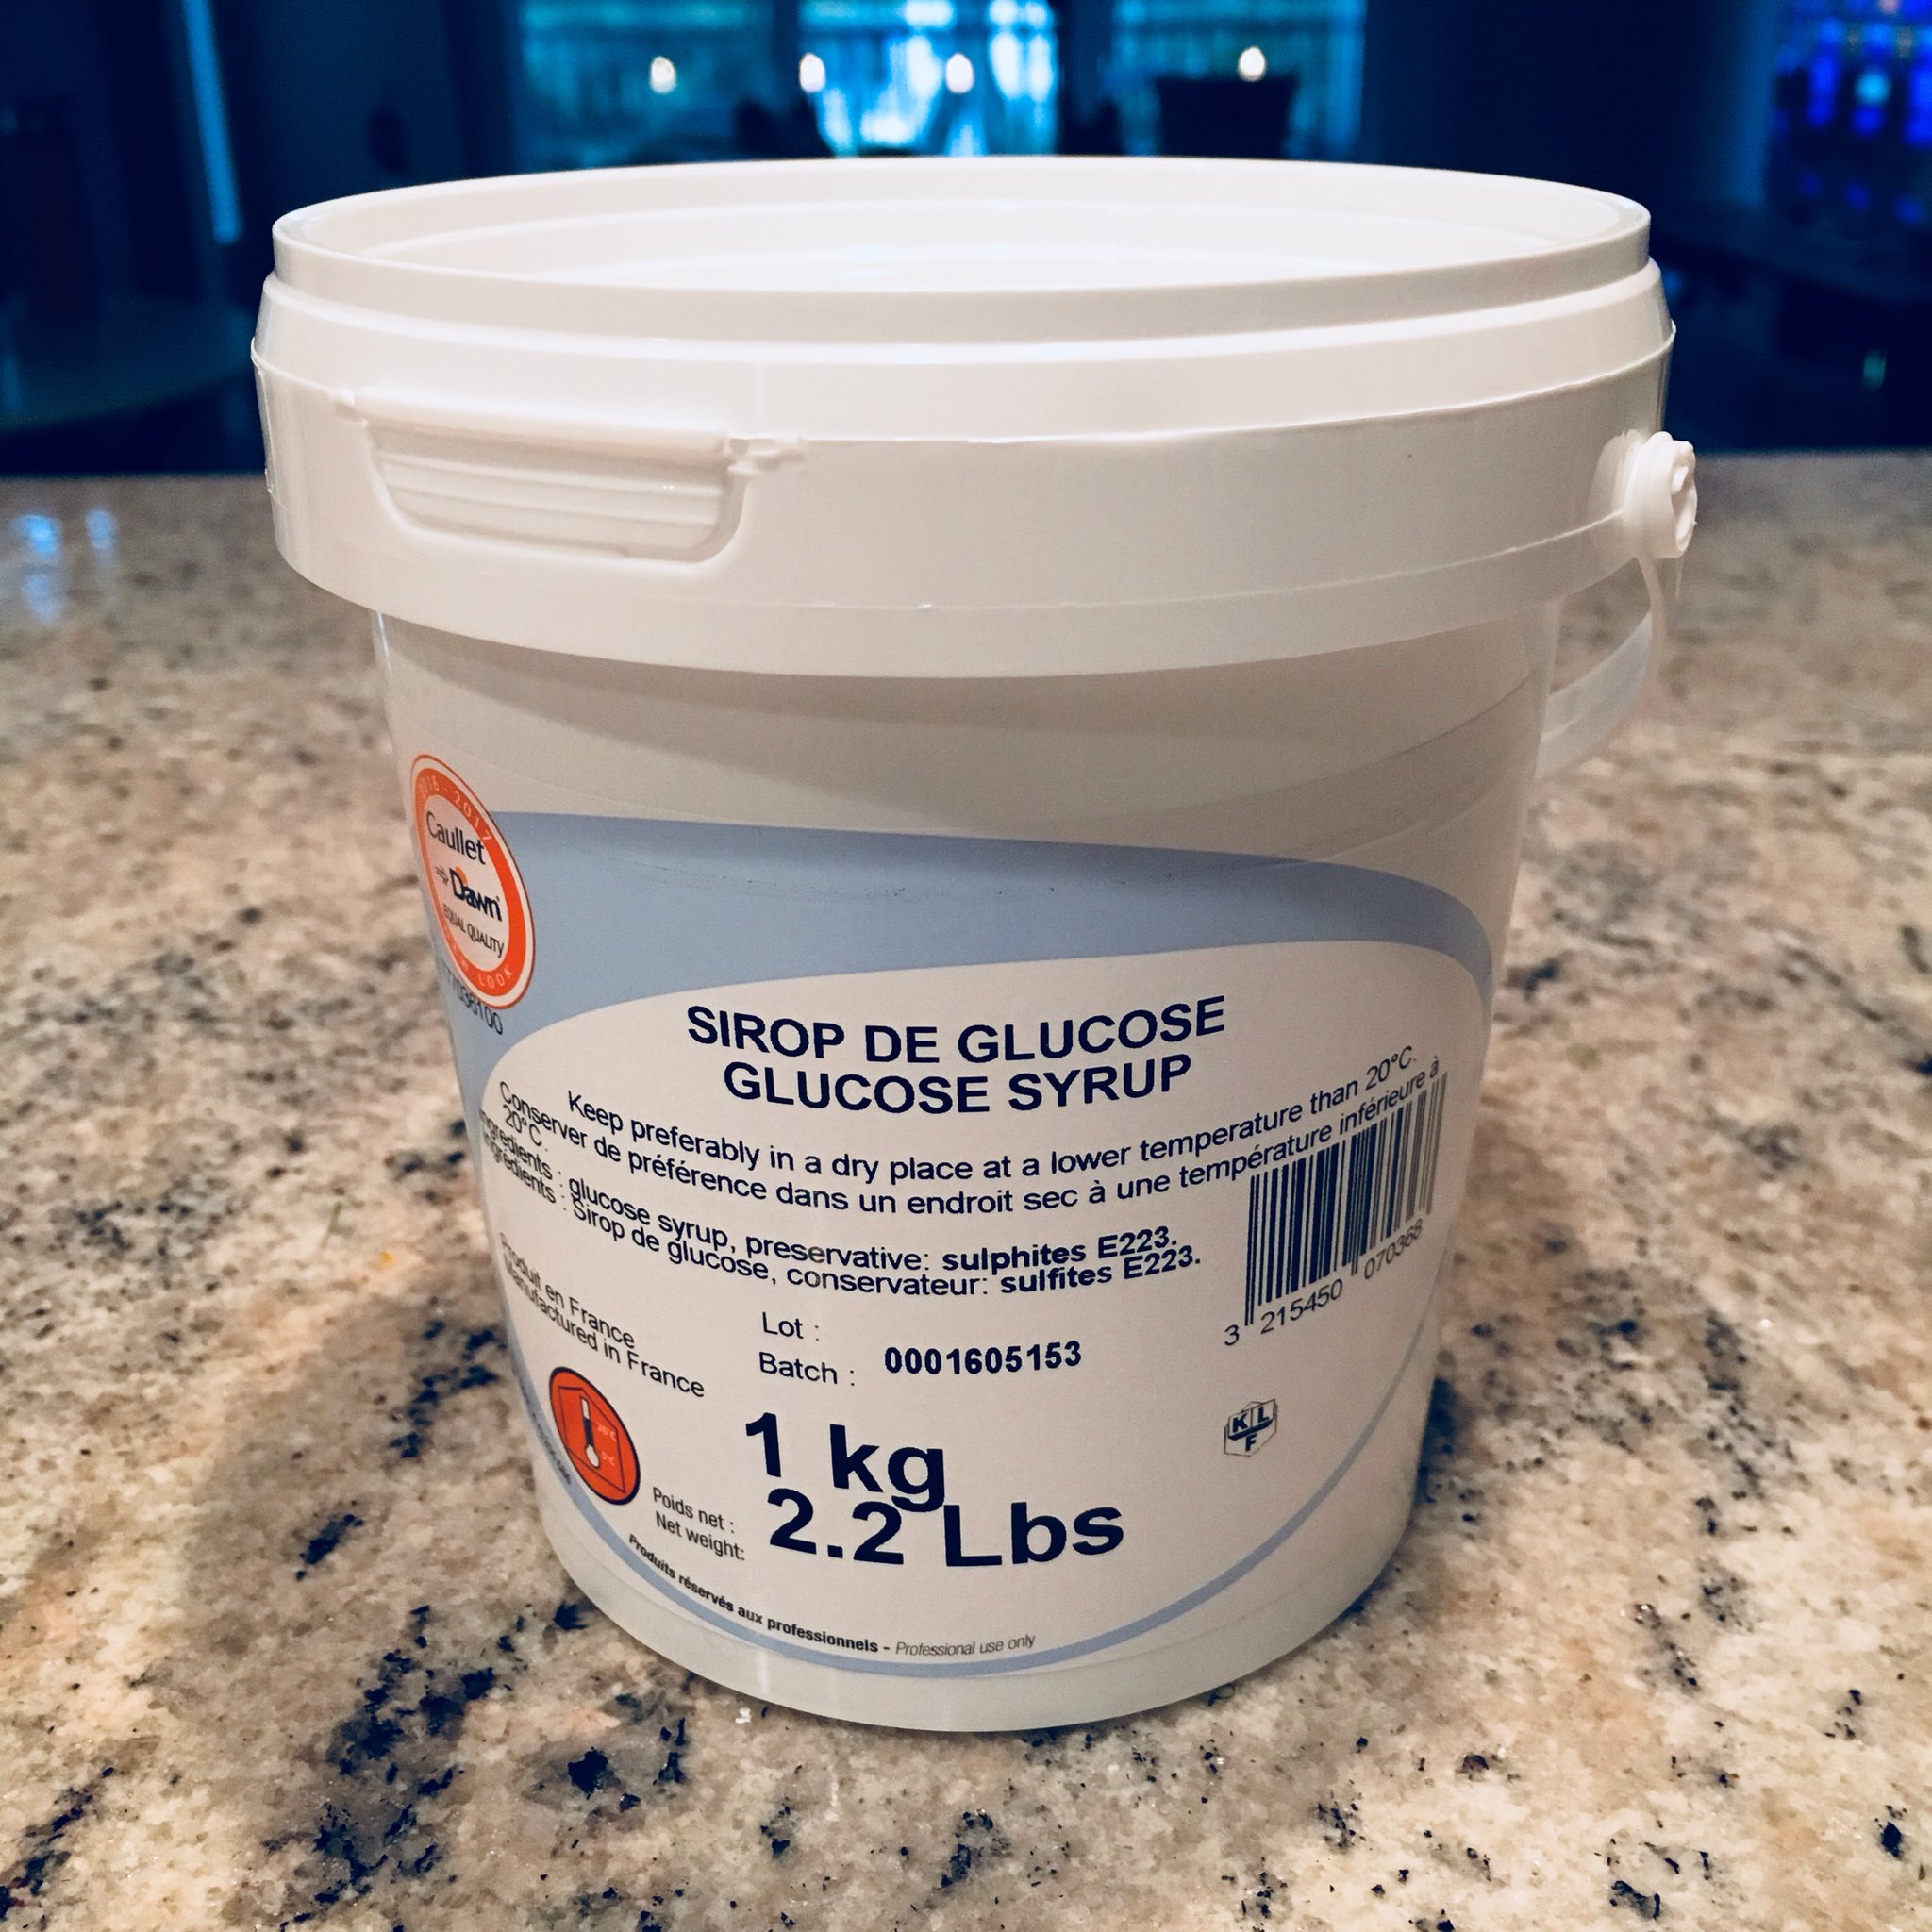 Sirop de glucose - 1 kg - Caullet